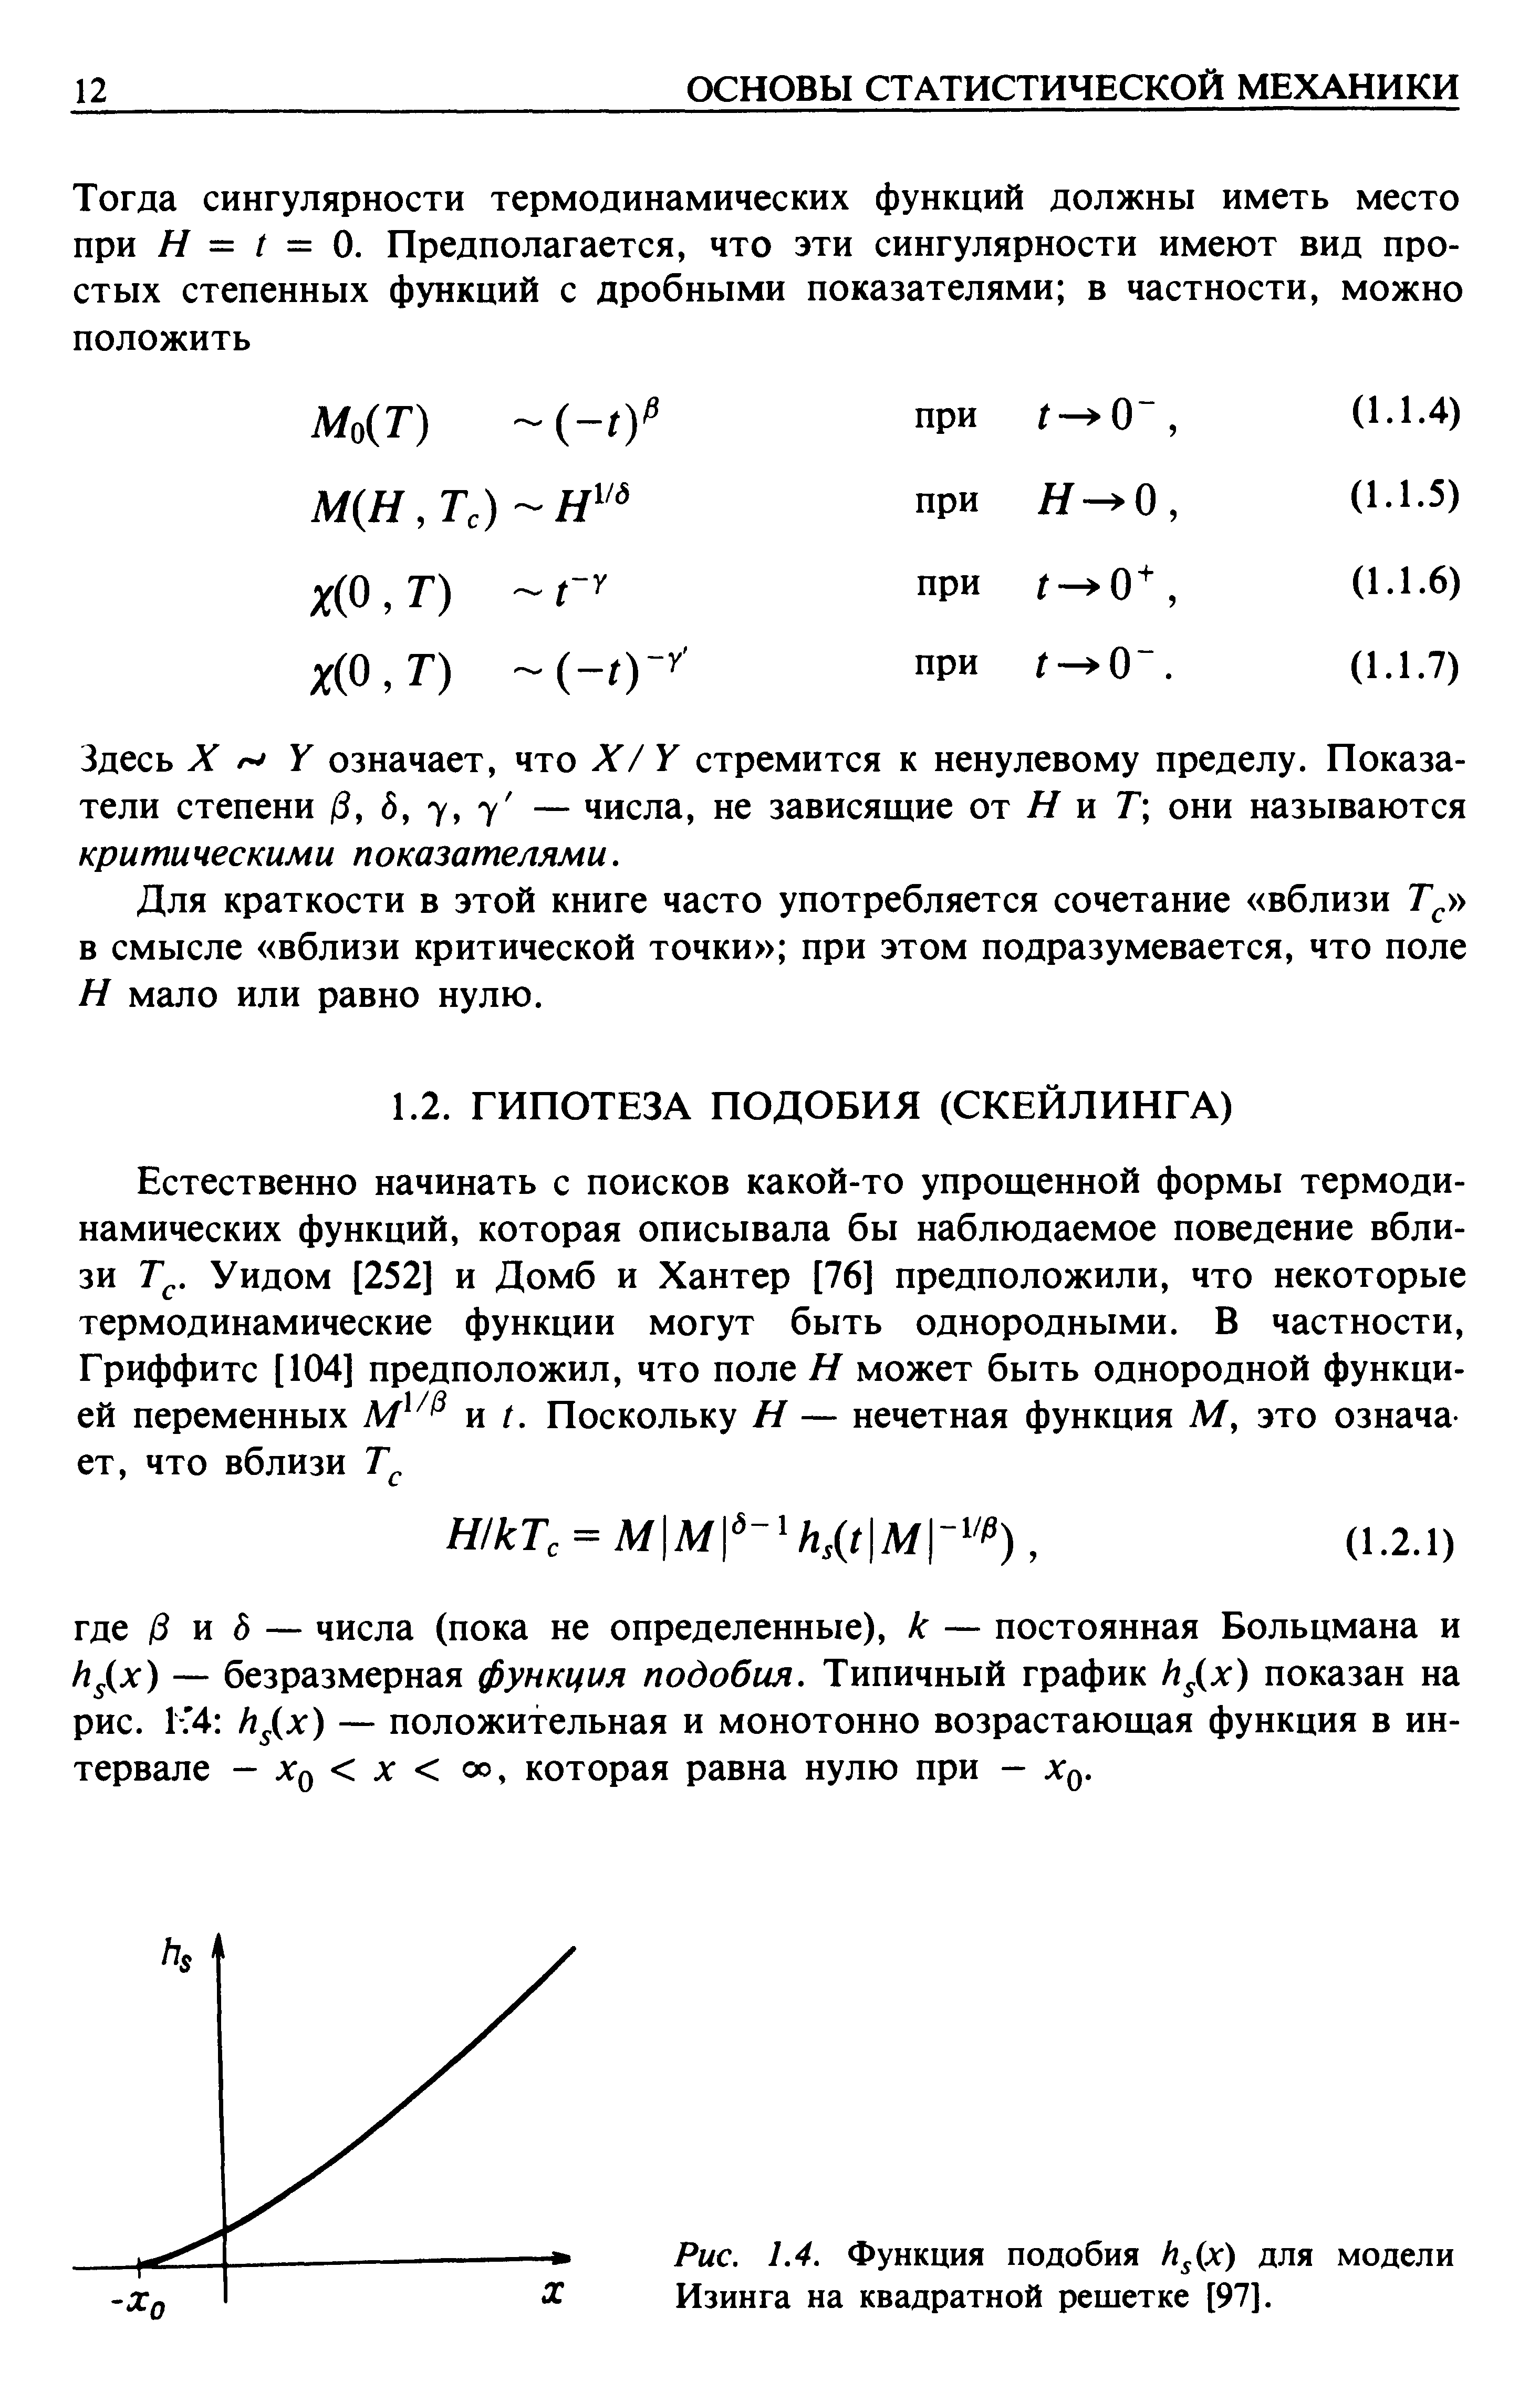 Функция подобия Ь х) для модели Изинга на квадратной решетке [97].
